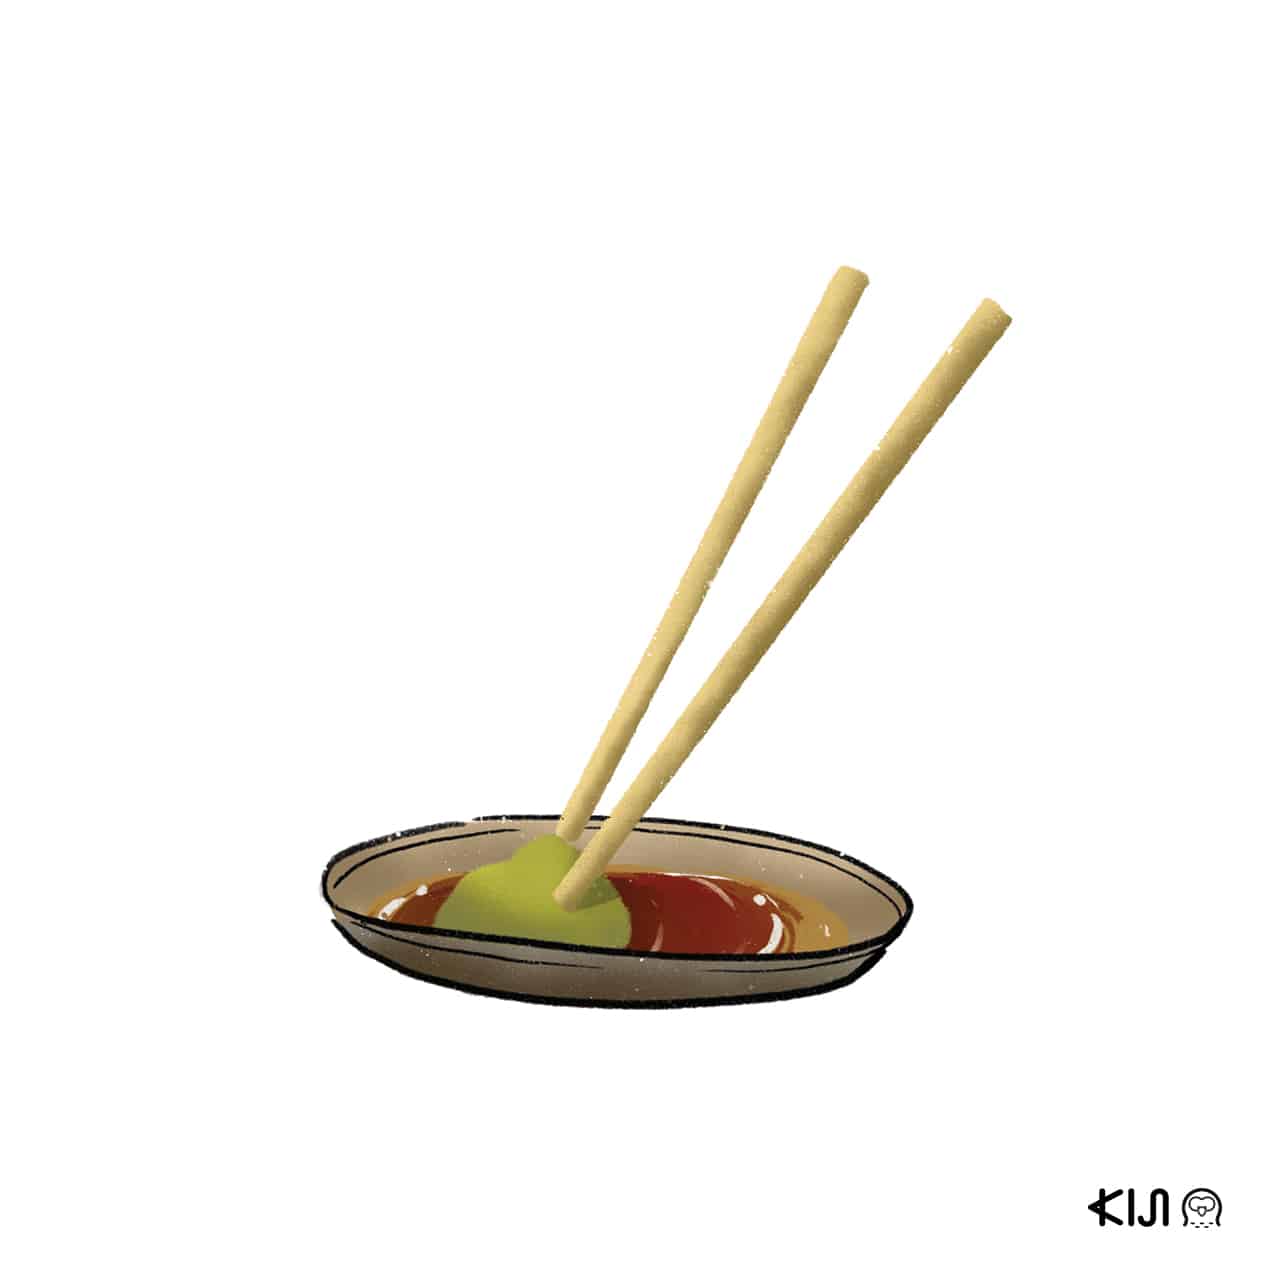 คนญี่ปุ่นไม่ละลายวาซาบิใส่โชยุ sushi kiji